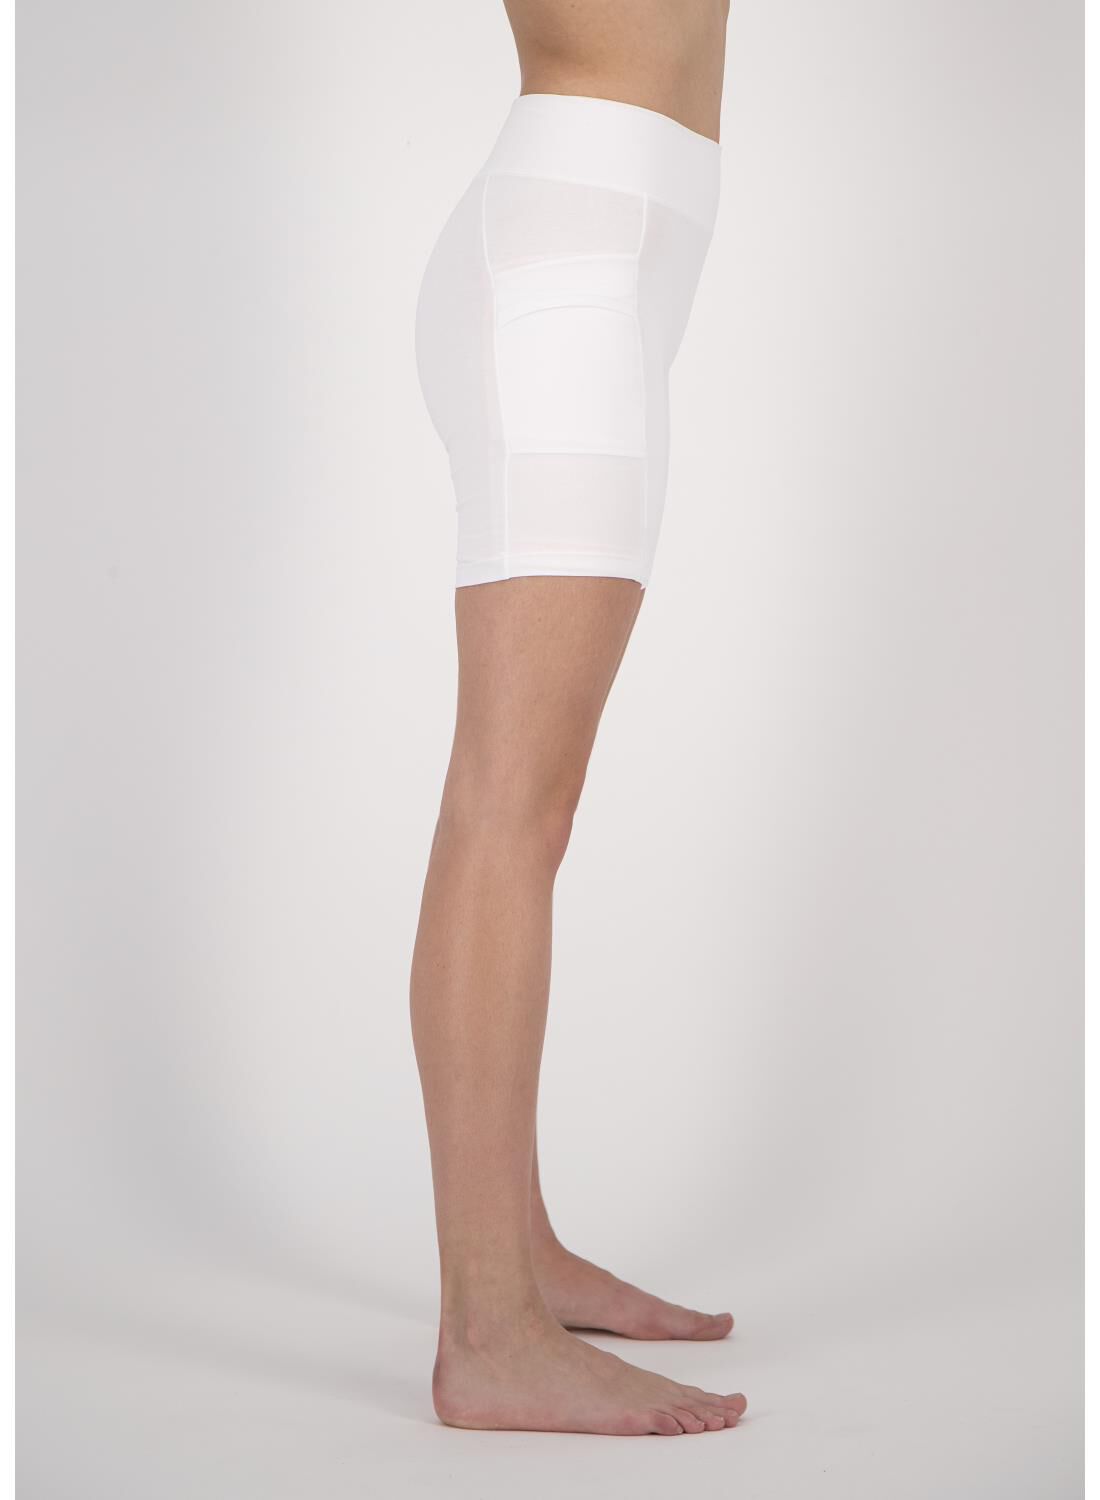 white cotton bike shorts womens